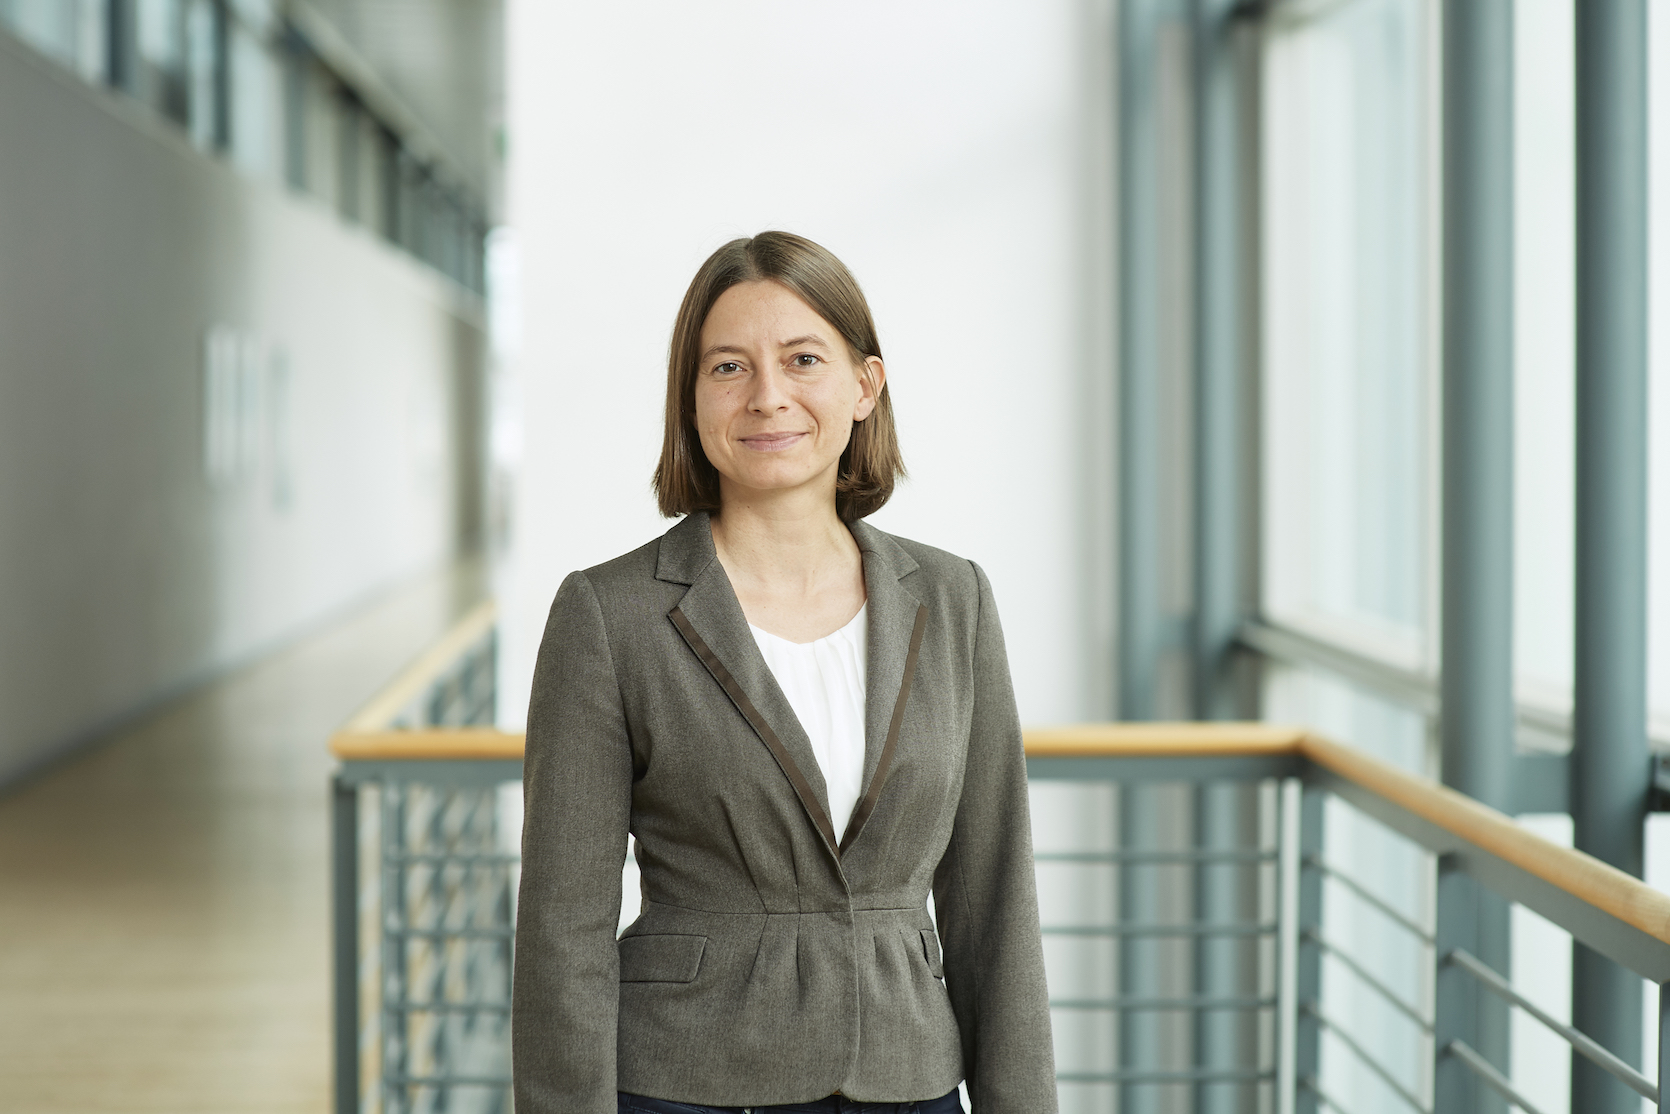 Dr.-Ing. Katharina Morawietz